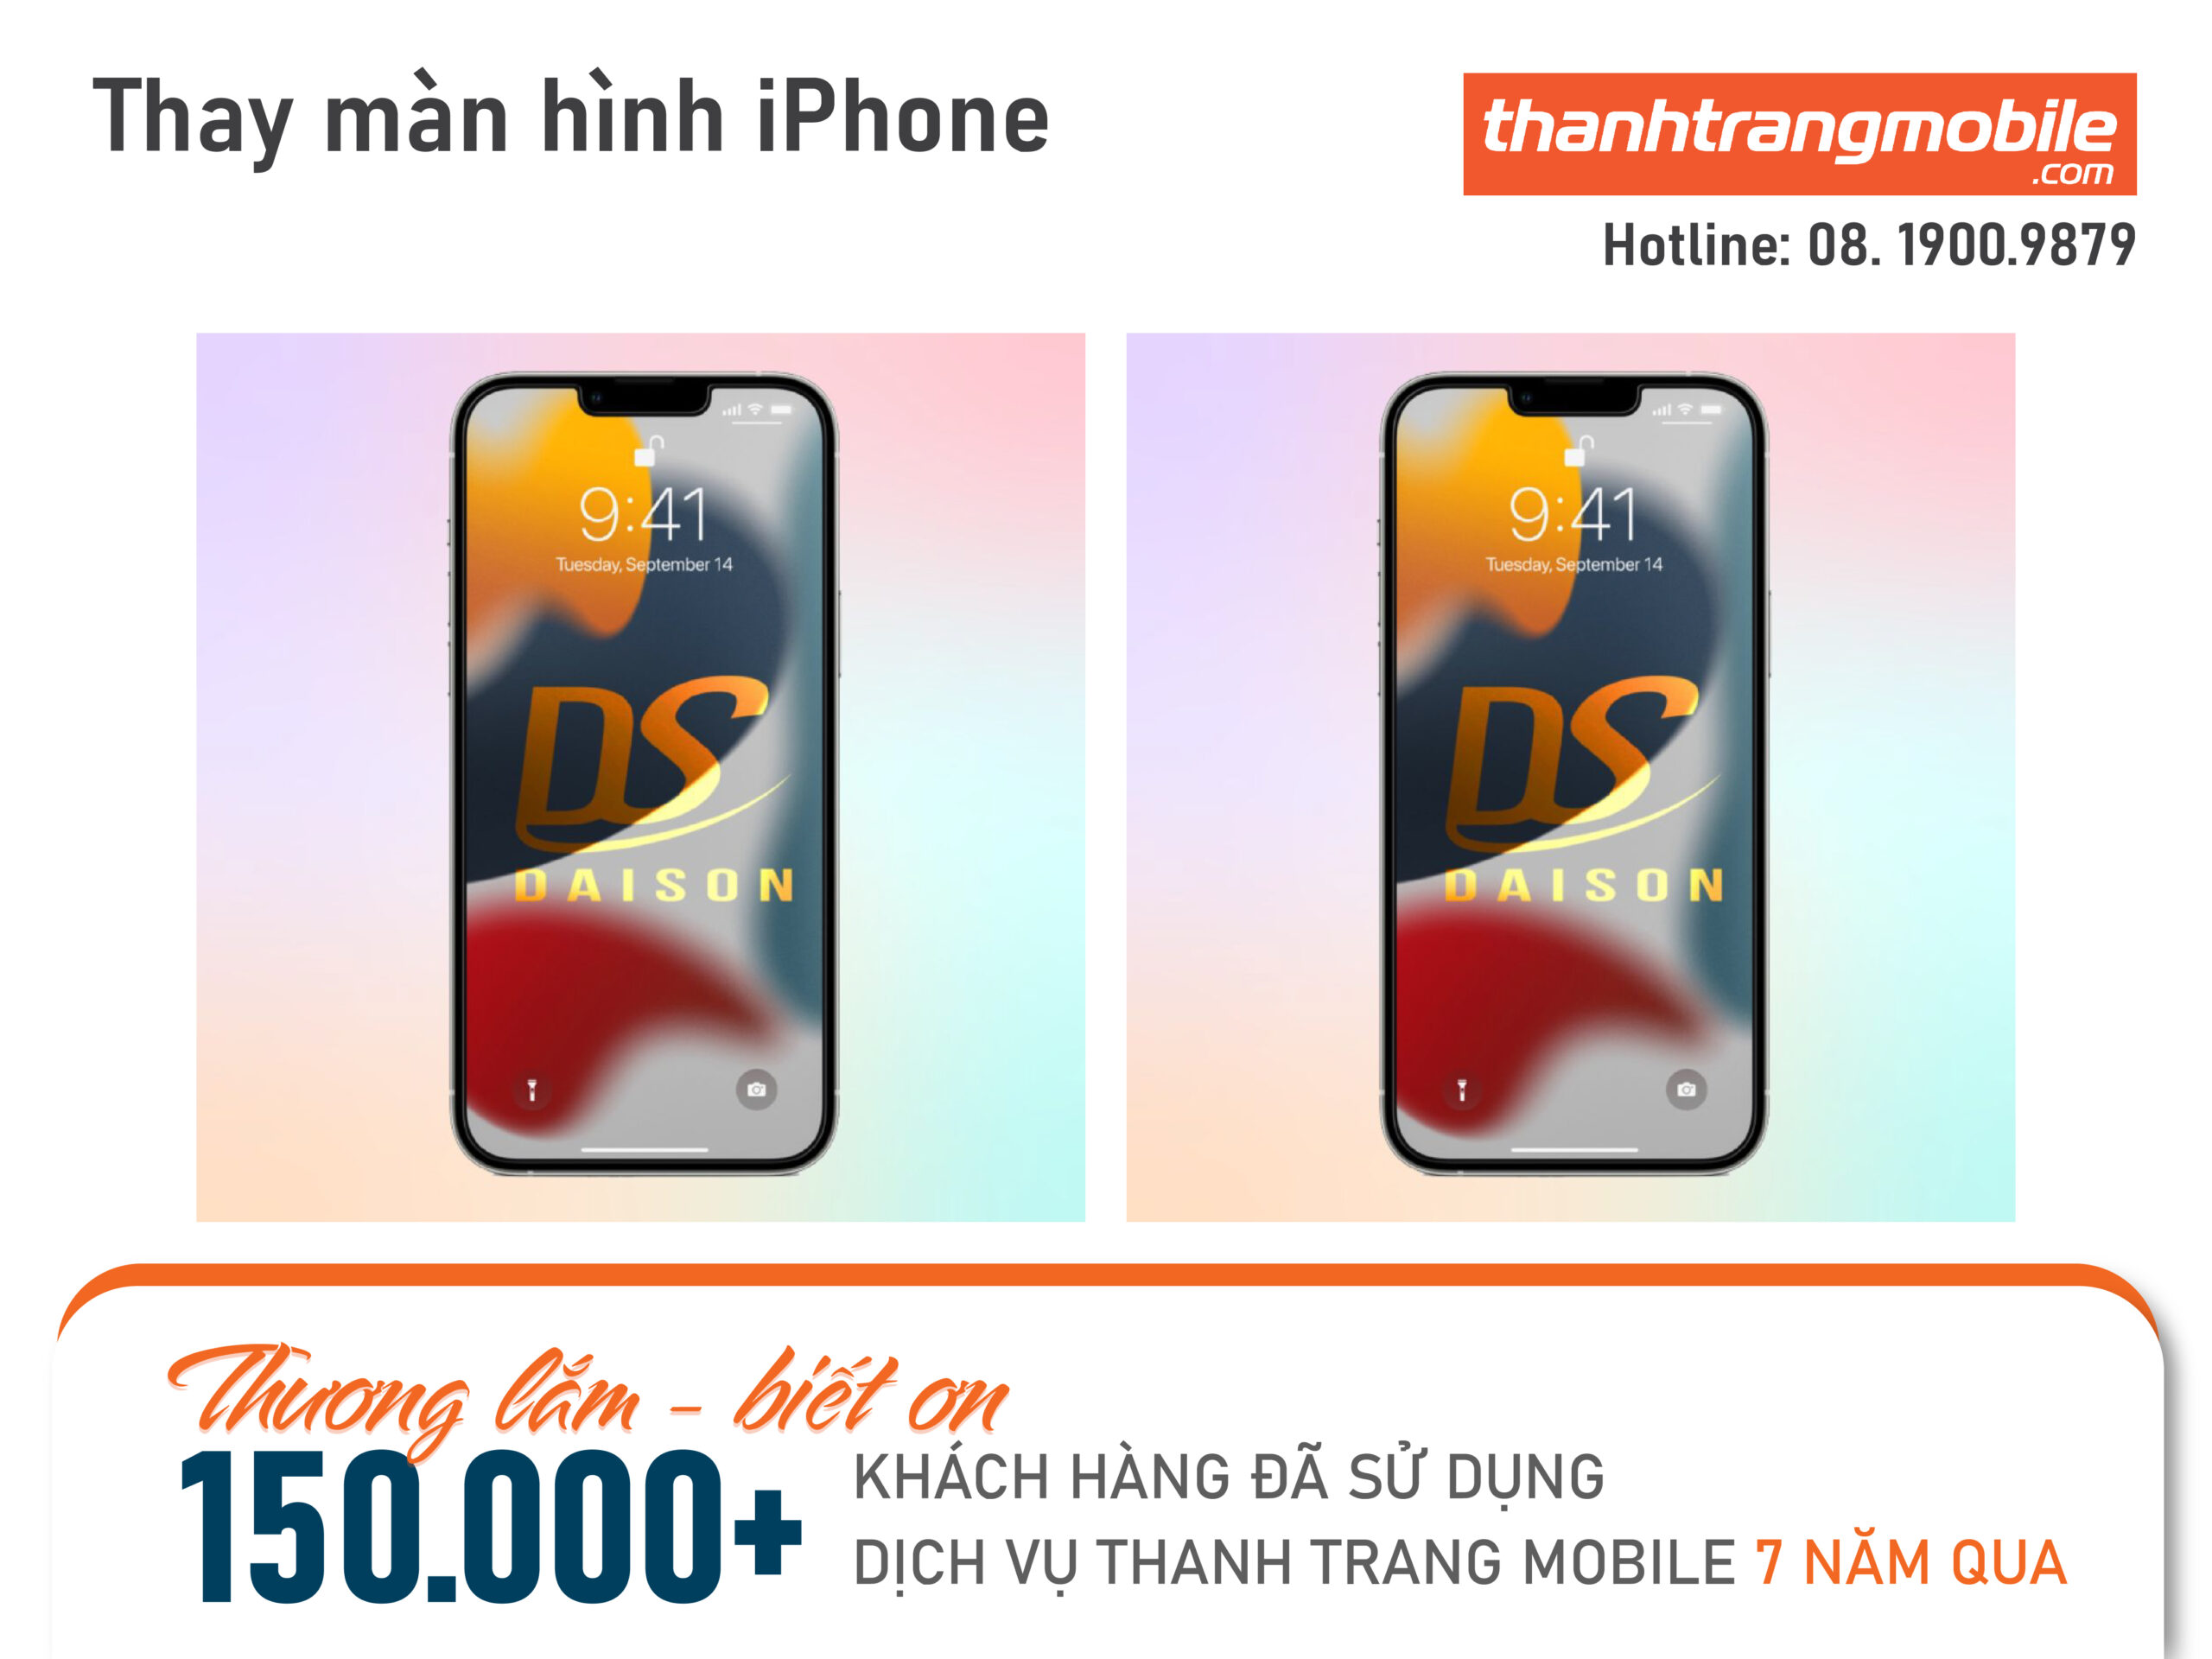 thay-man-hinh-iphone-thanhtrangmobile-2-scaled Thay Màn Hình iPhone 13 Pro Max